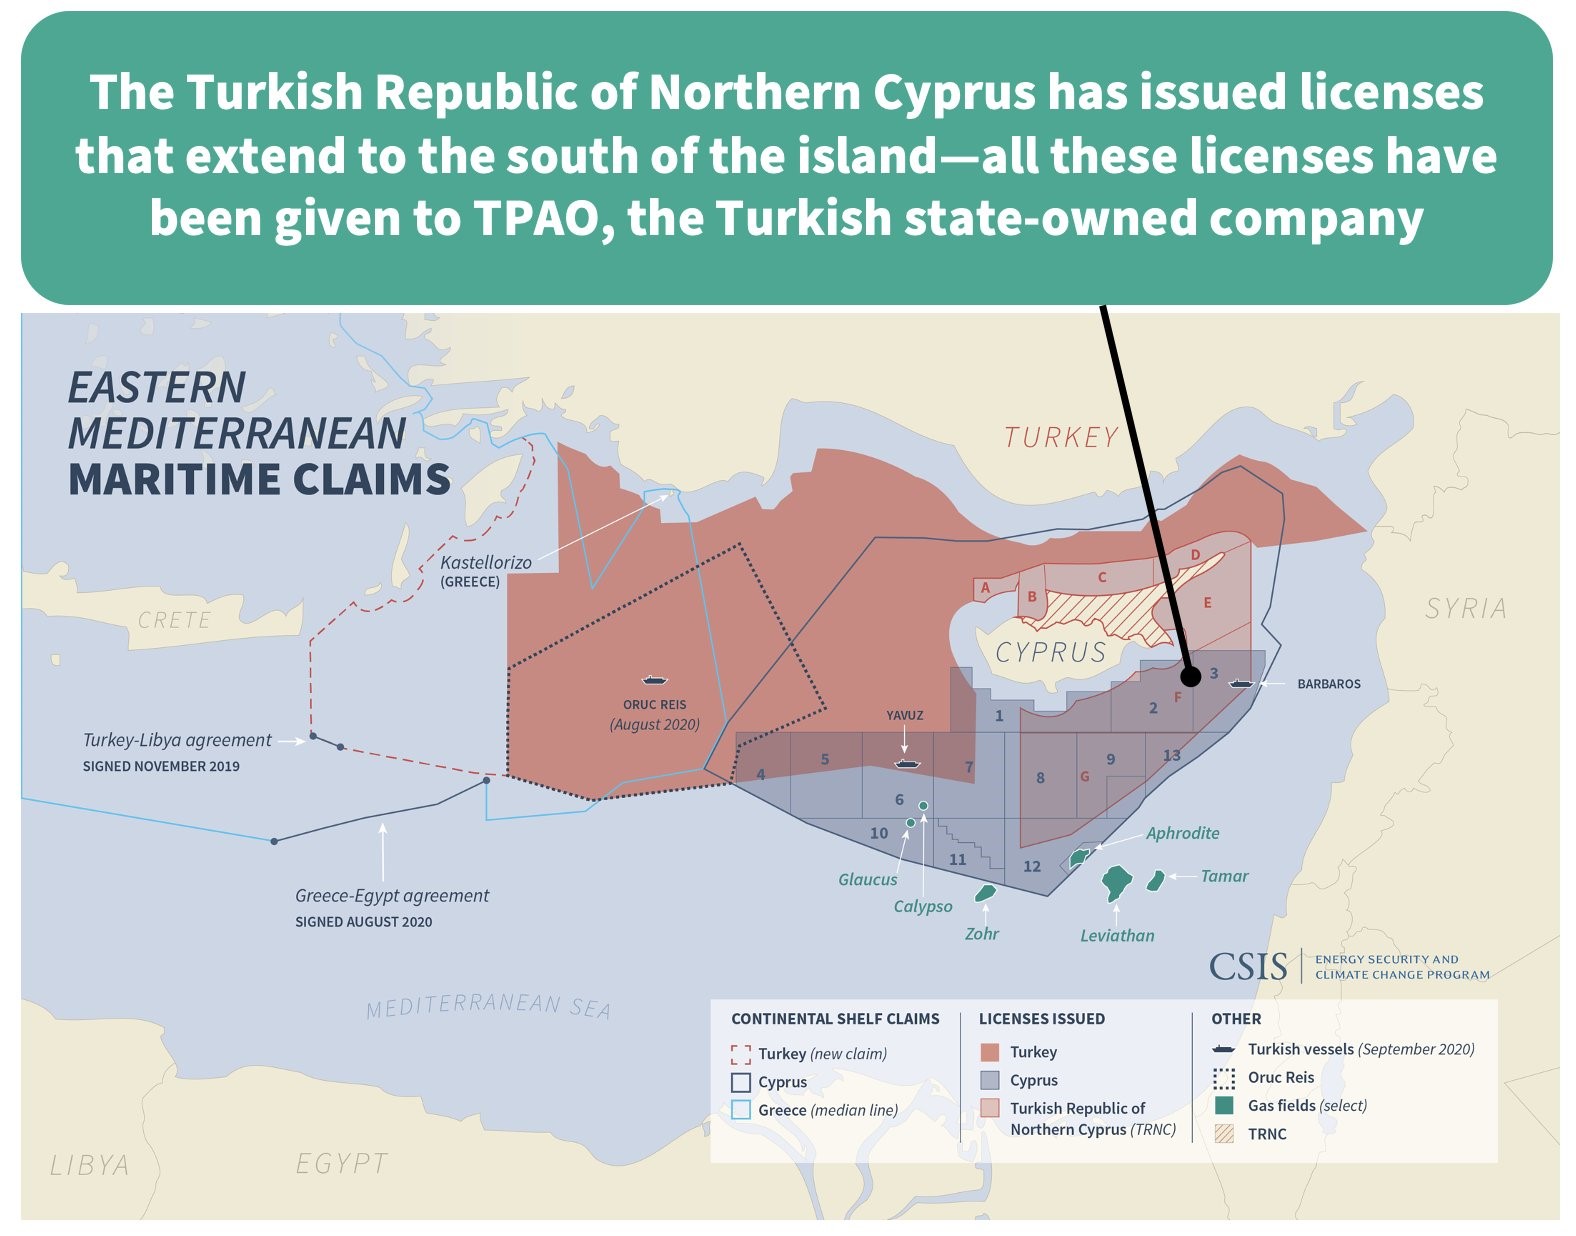 Σύμβουλος του Κ.Μητσοτάκη… ανέφερε τα κατεχόμενα ως «Τουρκική Δημοκρατία της Βόρειας Κύπρου»